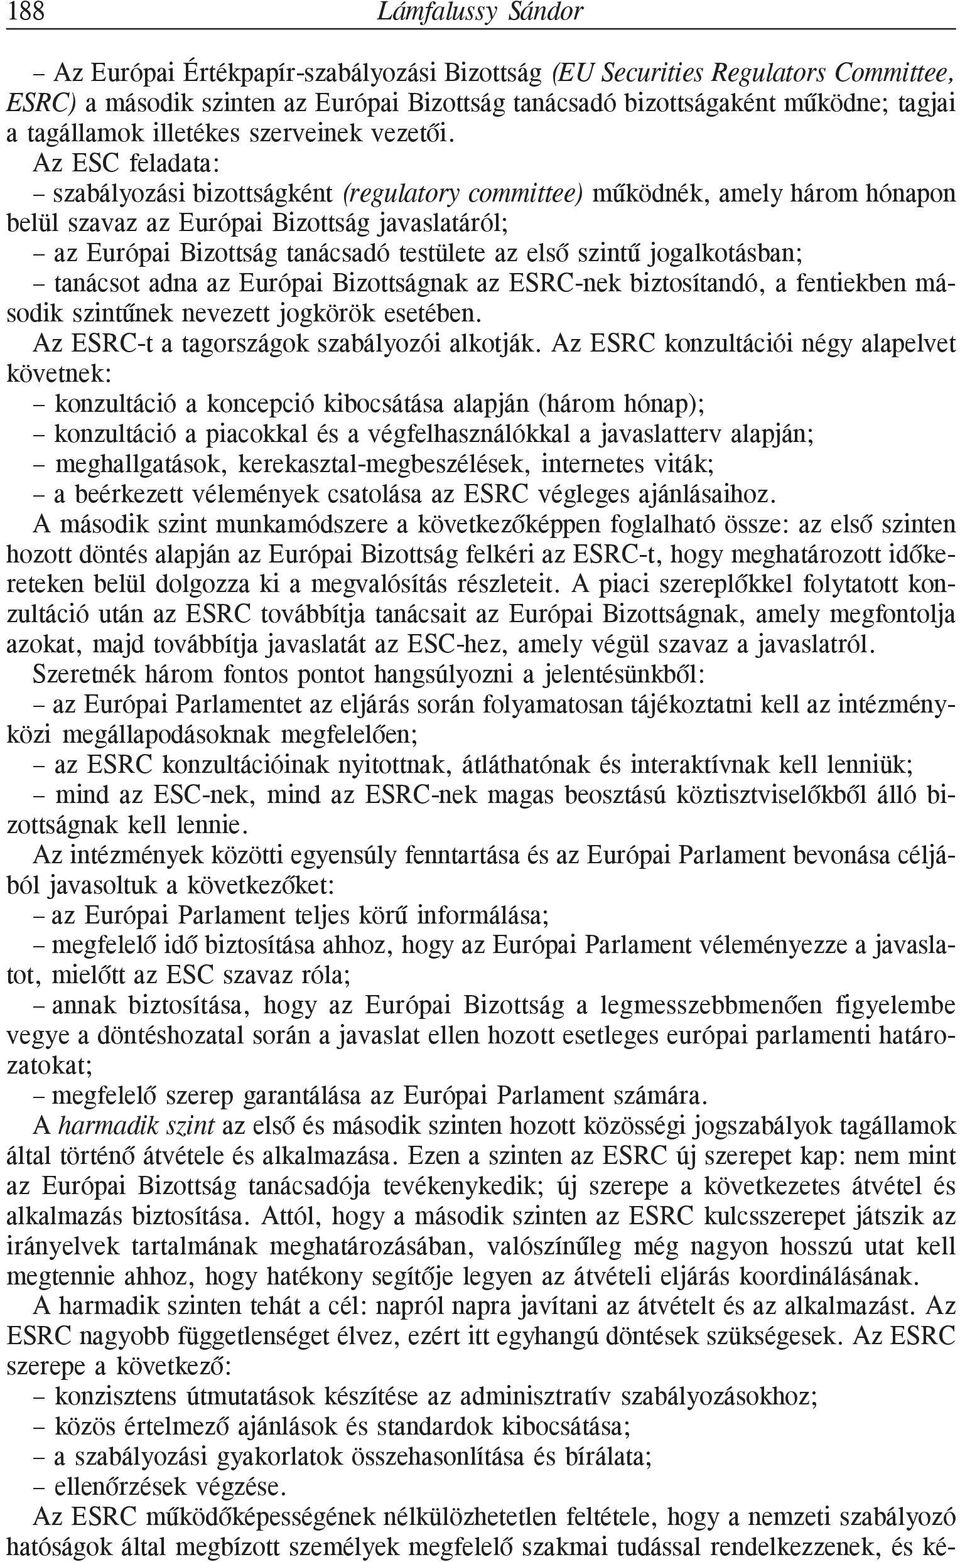 Az ESC feladata: szabályozási bizottságként (regulatory committee) mûködnék, amely három hónapon belül szavaz az Európai Bizottság javaslatáról; az Európai Bizottság tanácsadó testülete az elsõ